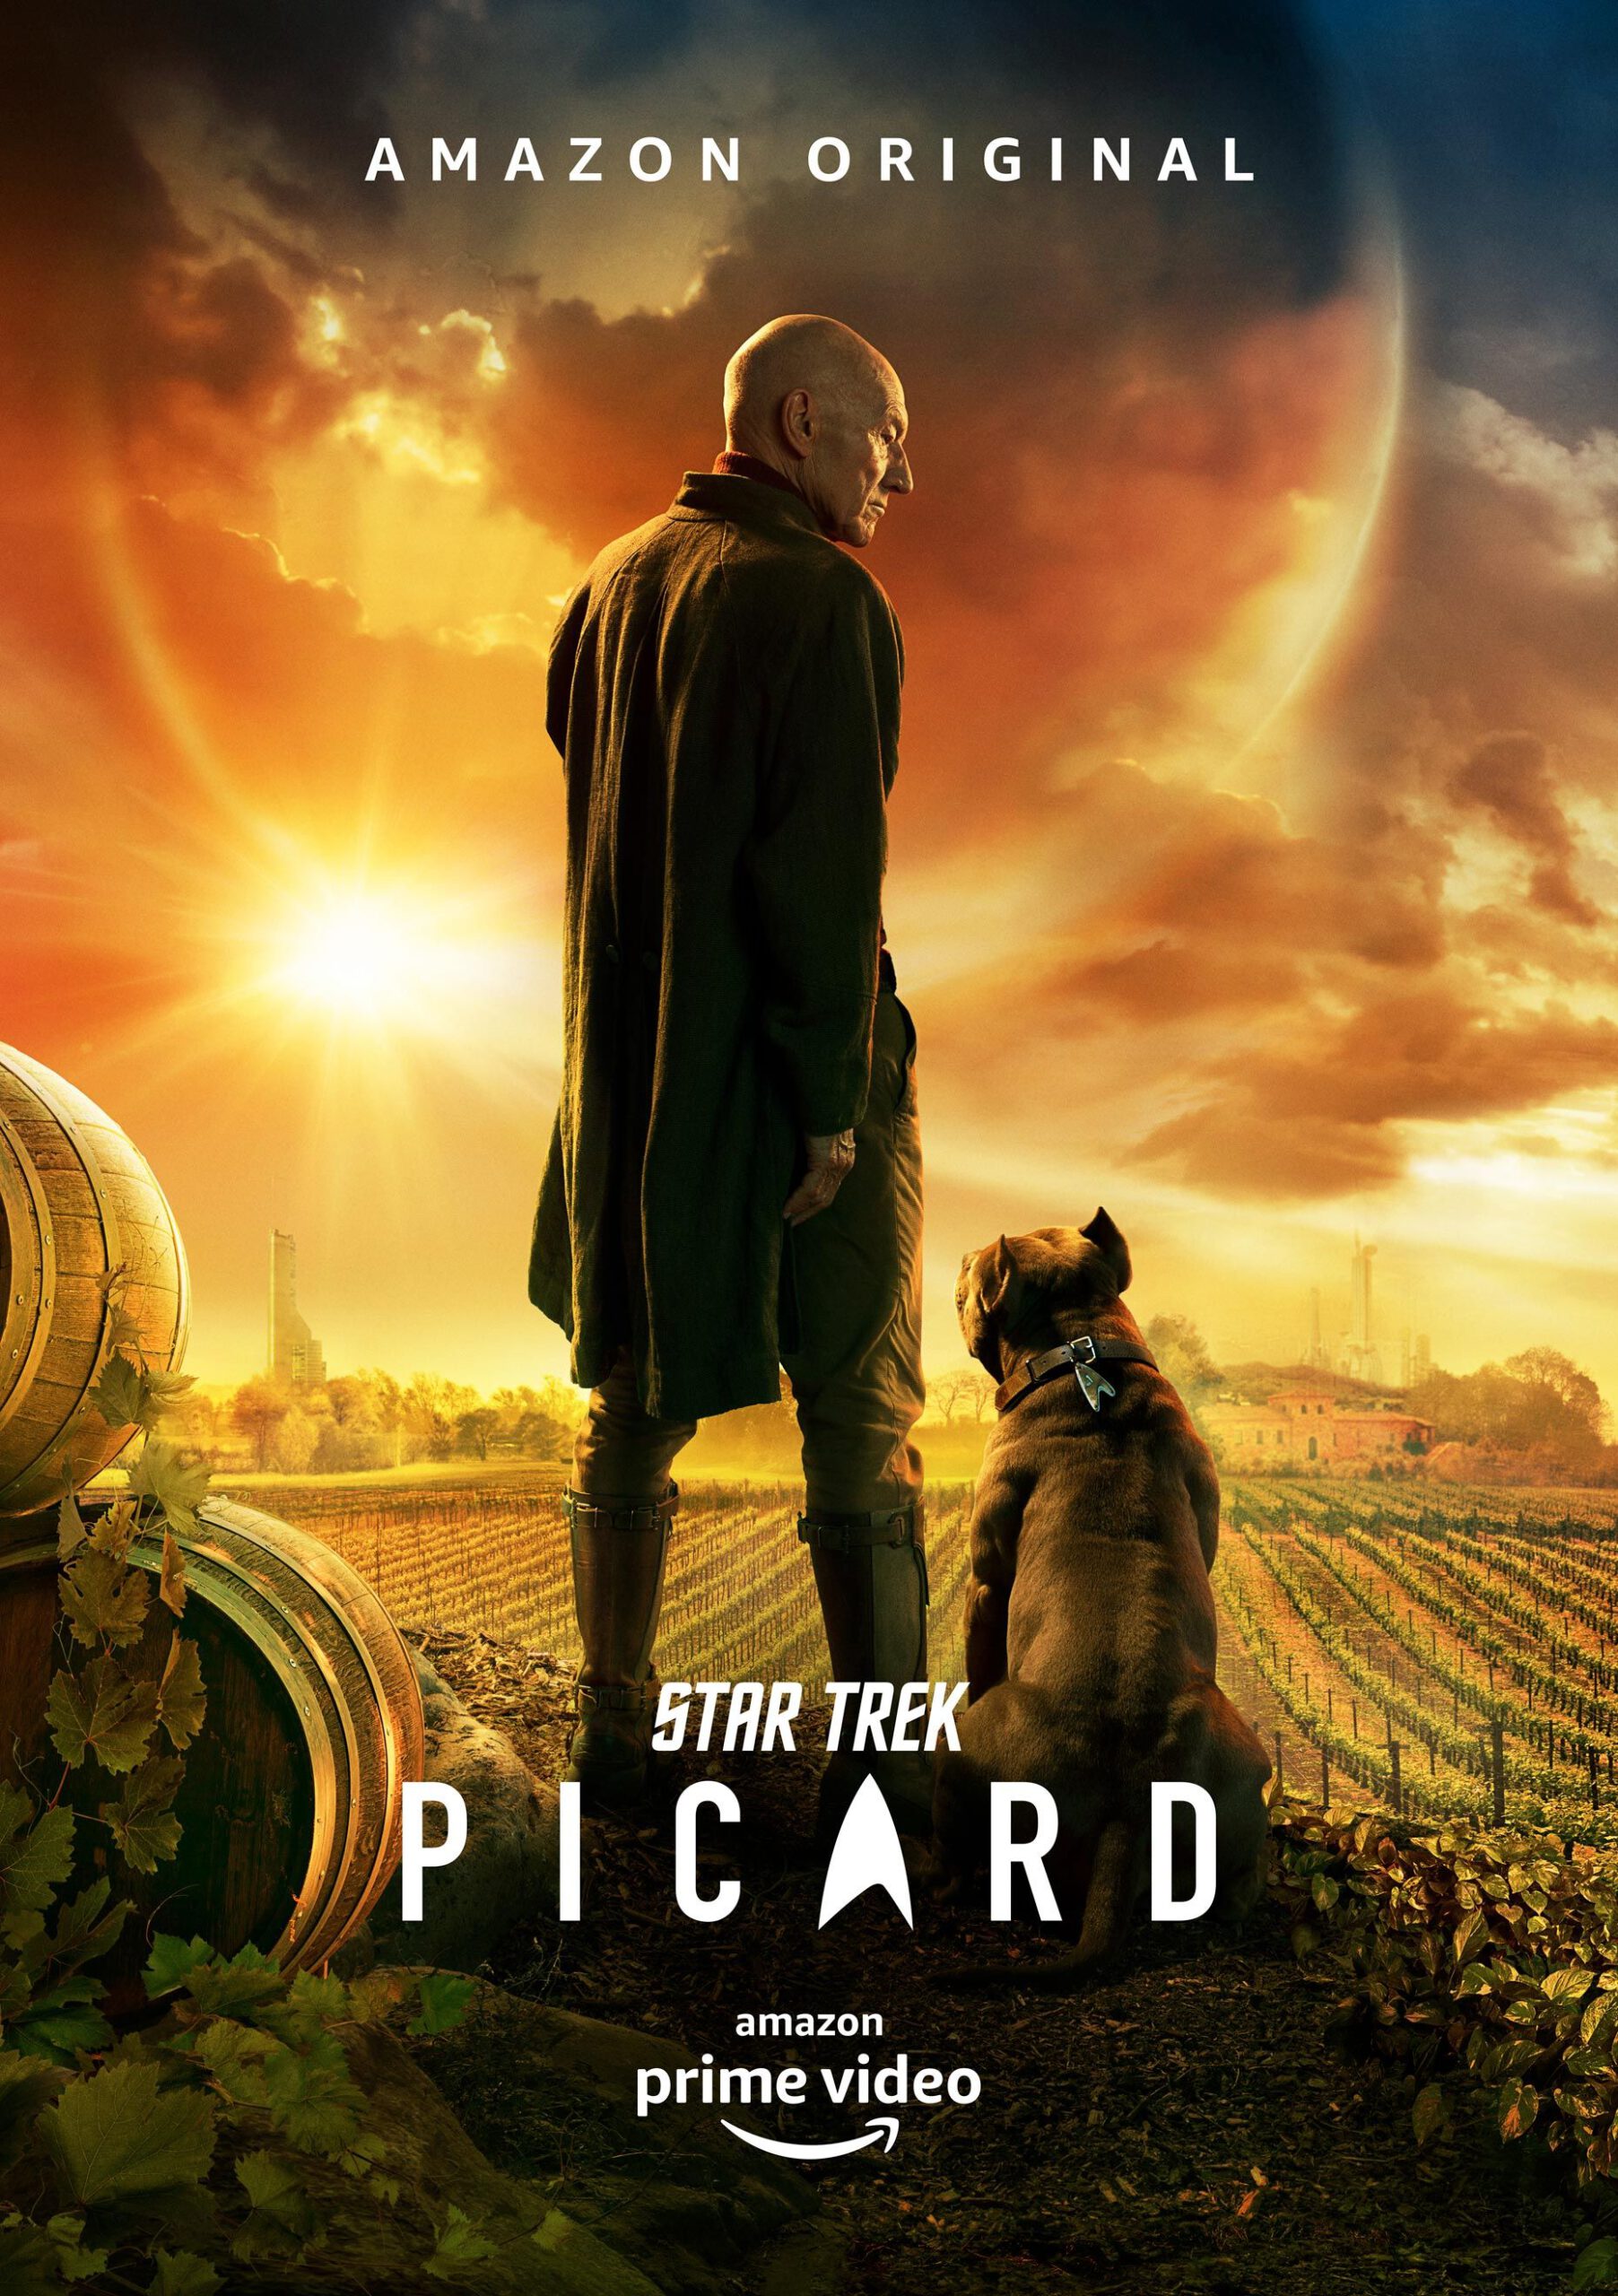 ดูหนังออนไลน์ฟรี Star Trek Picard Season2 EP4 สตาร์ เทรค ปิการ์ด ซับไทย ซีซั่น 2 ตอนที่ 4